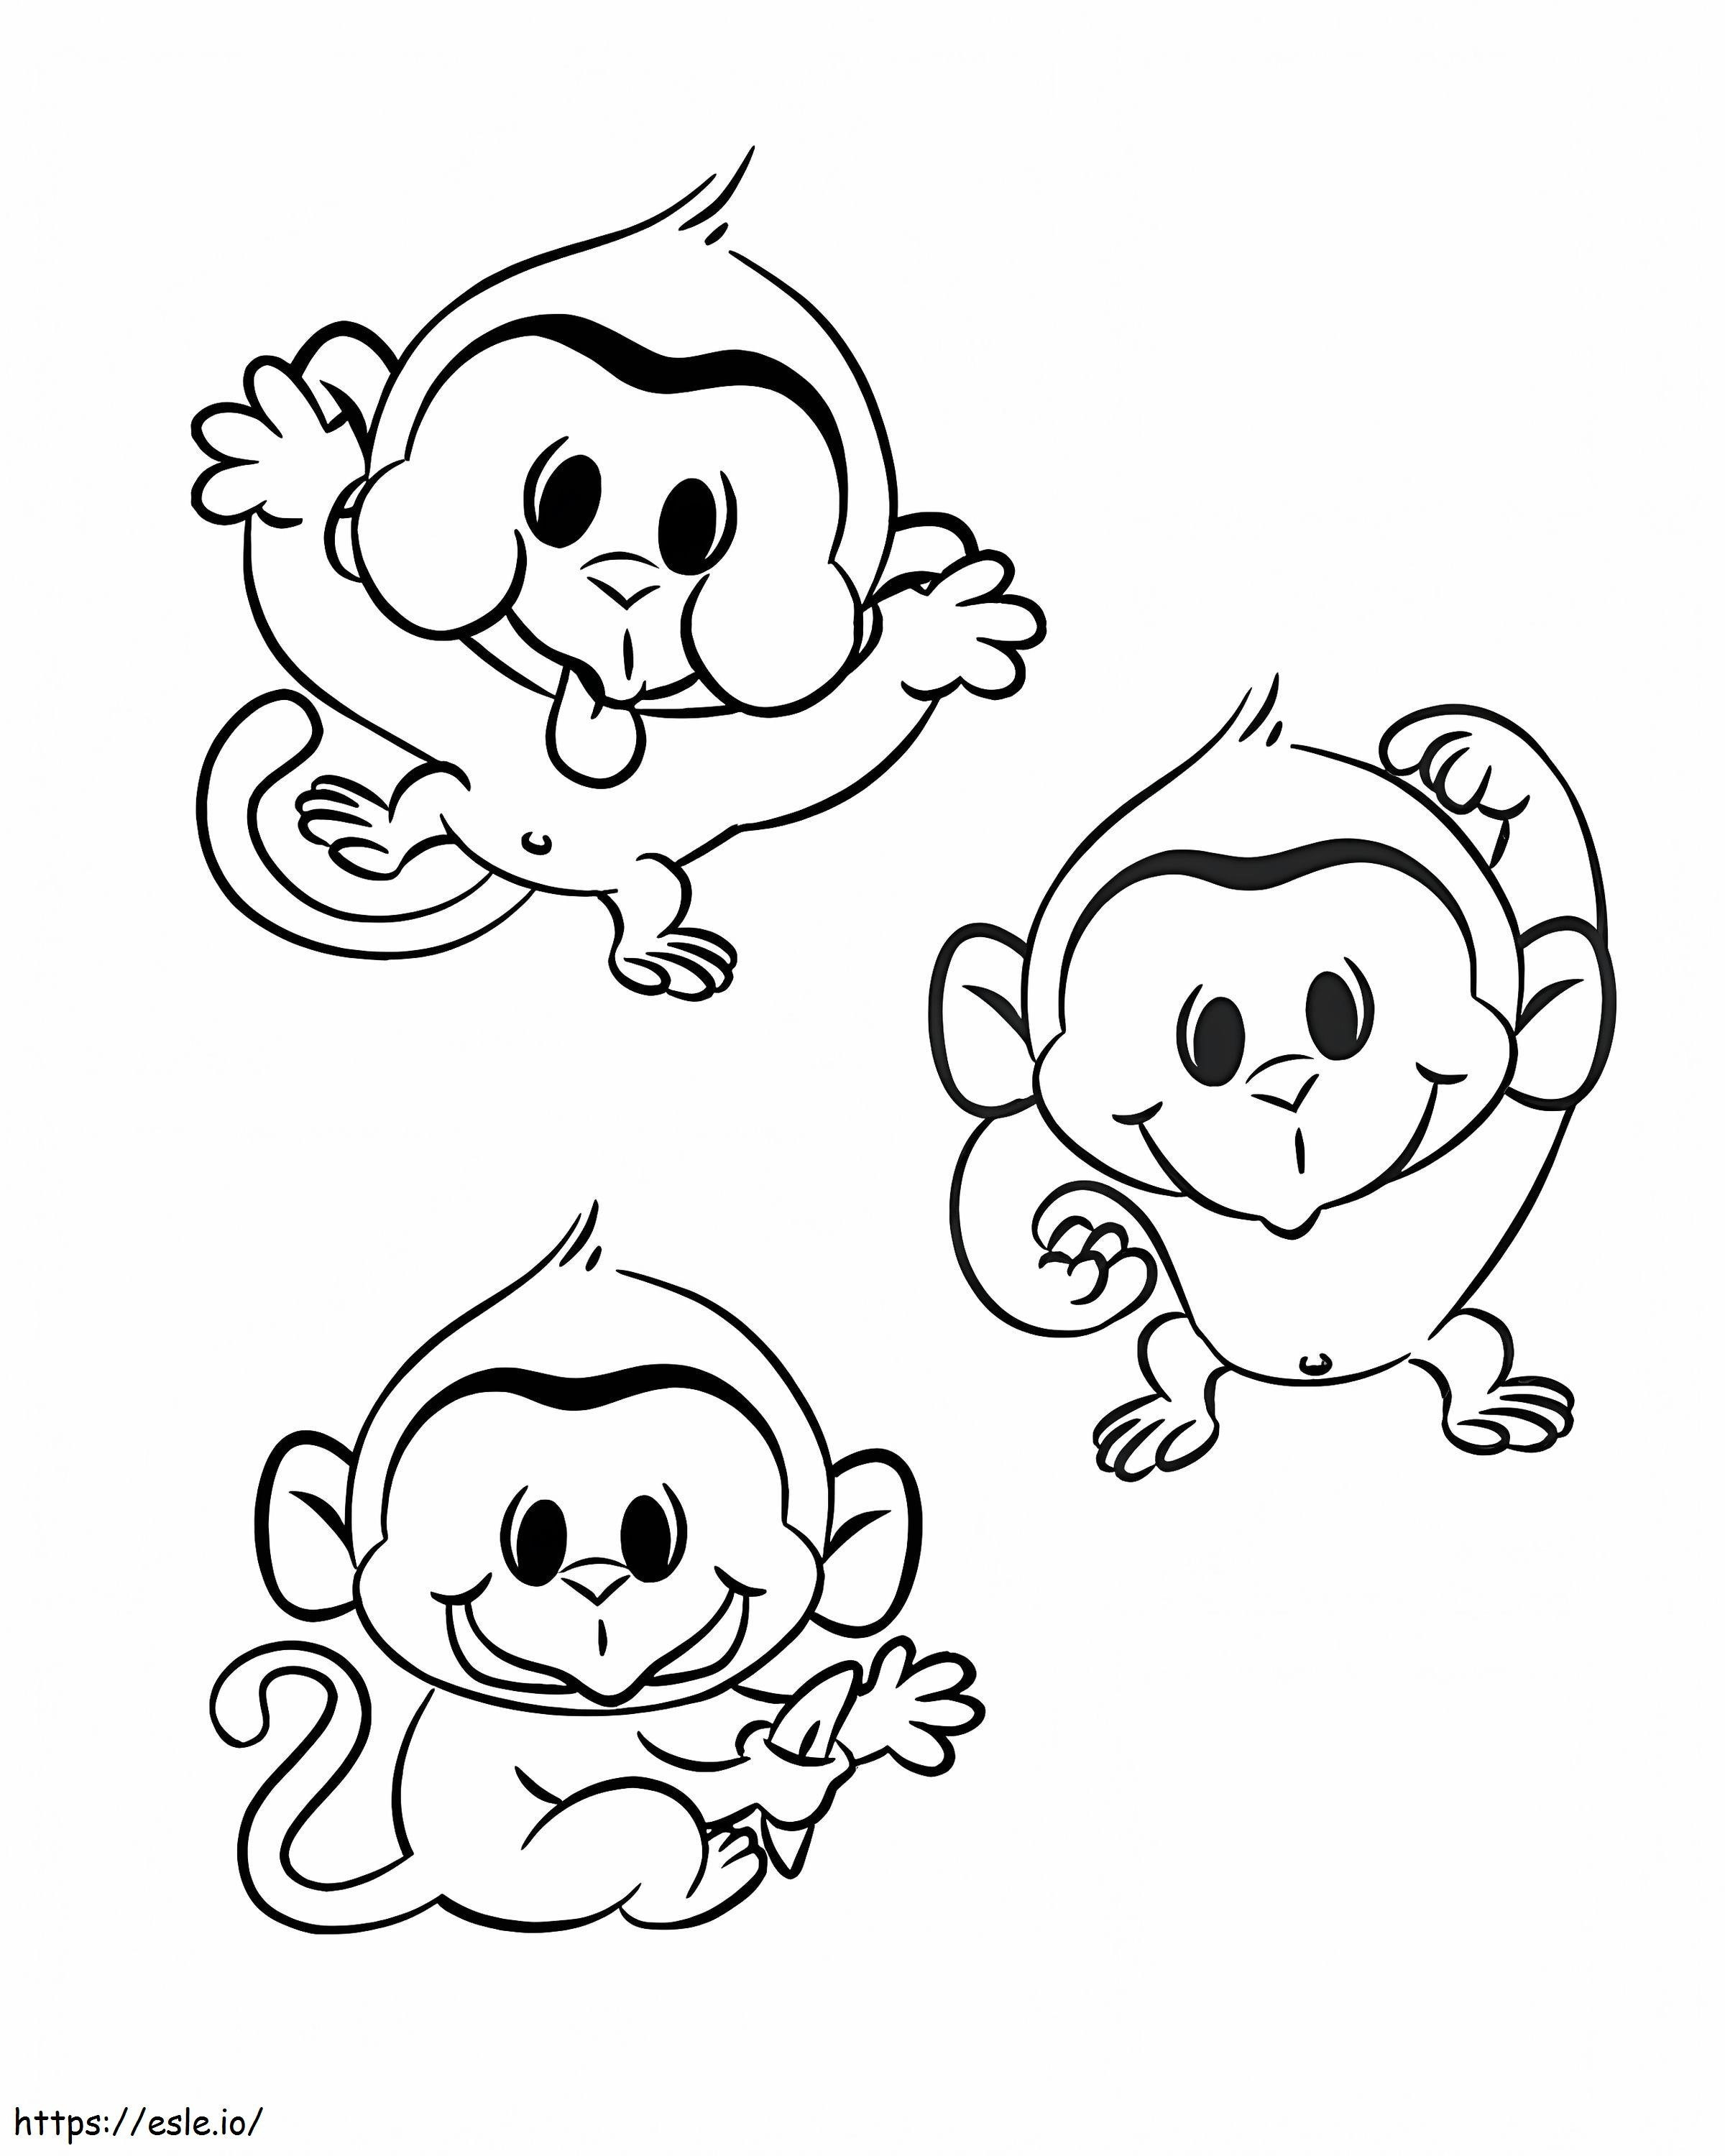 Macacos Fofos para colorir